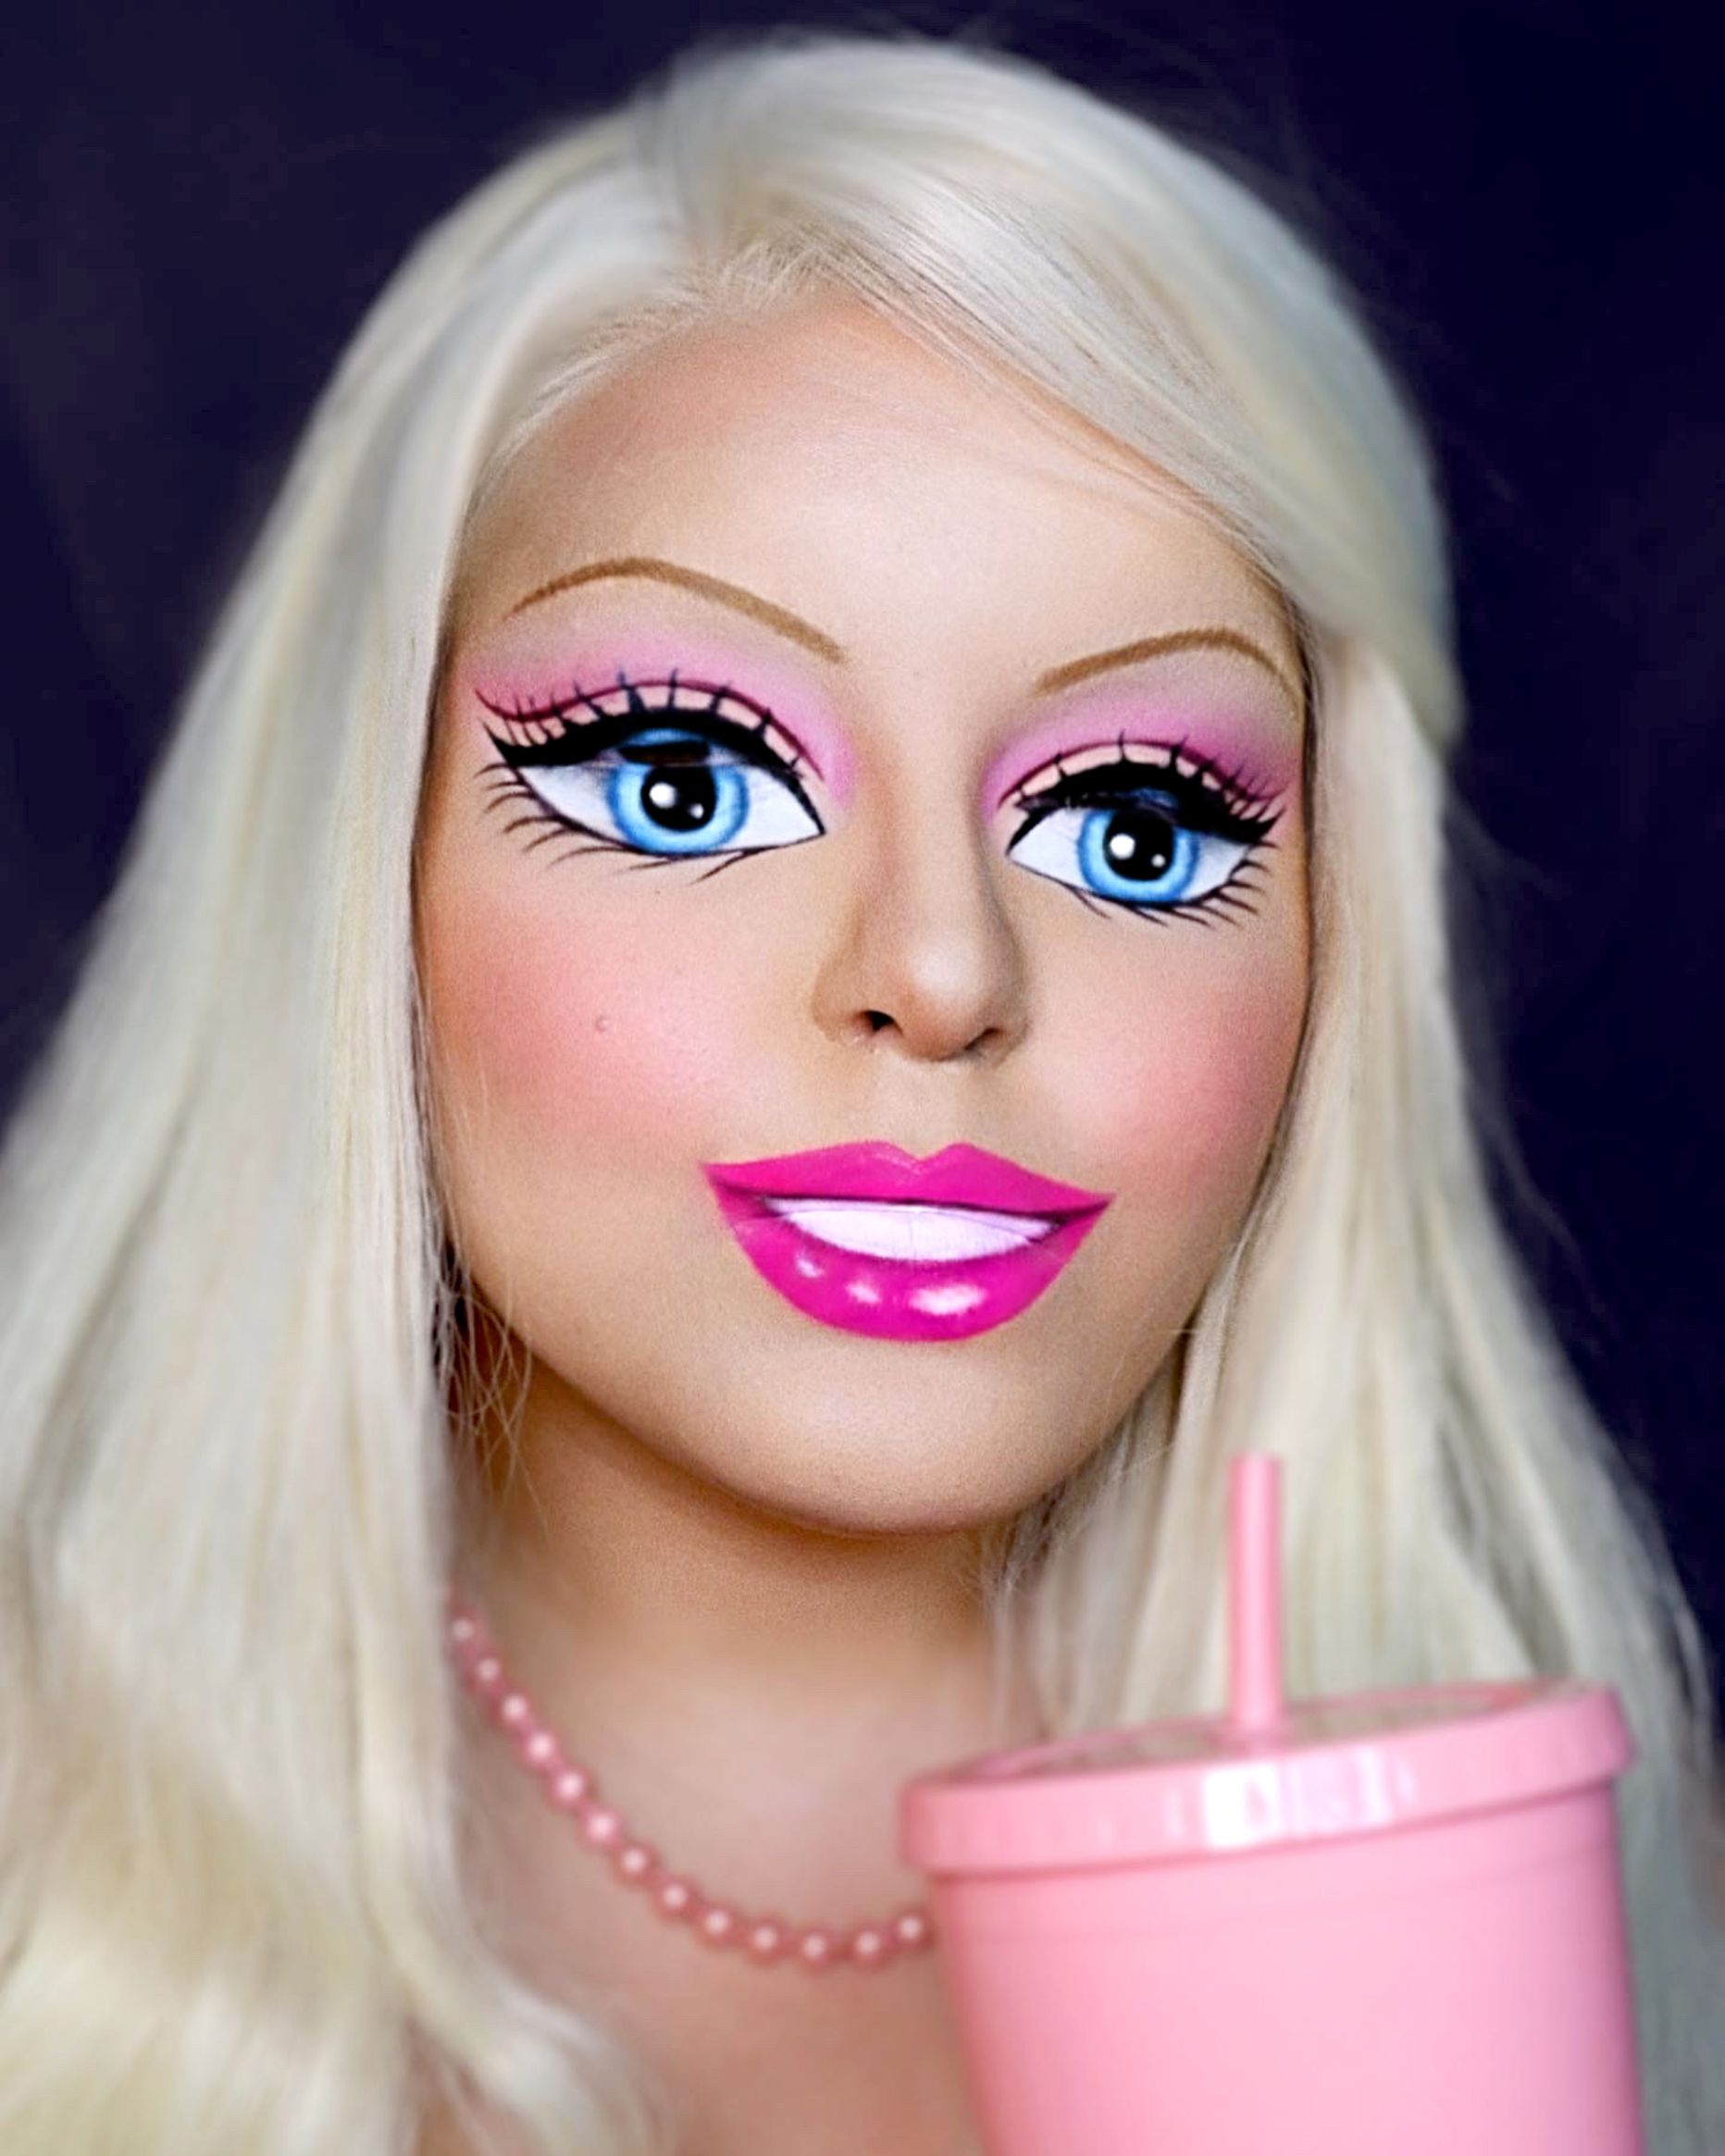 Pildik on Maryorie, kes on end meigikunsti abil suutnud muuta Barbie nukuks.